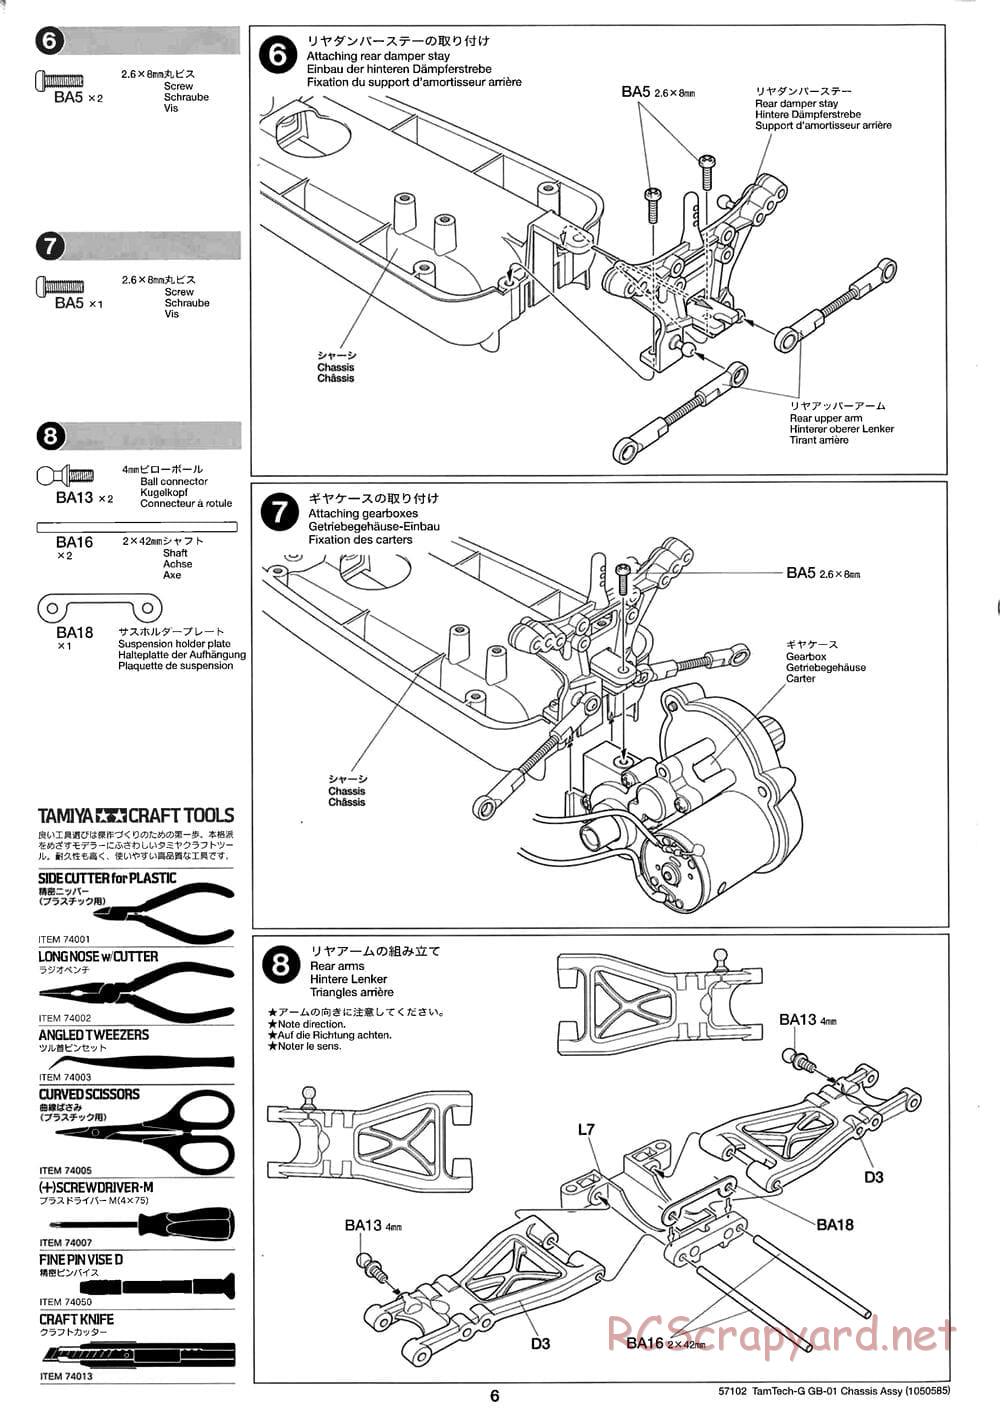 Tamiya - GB-01 Chassis - Manual - Page 6